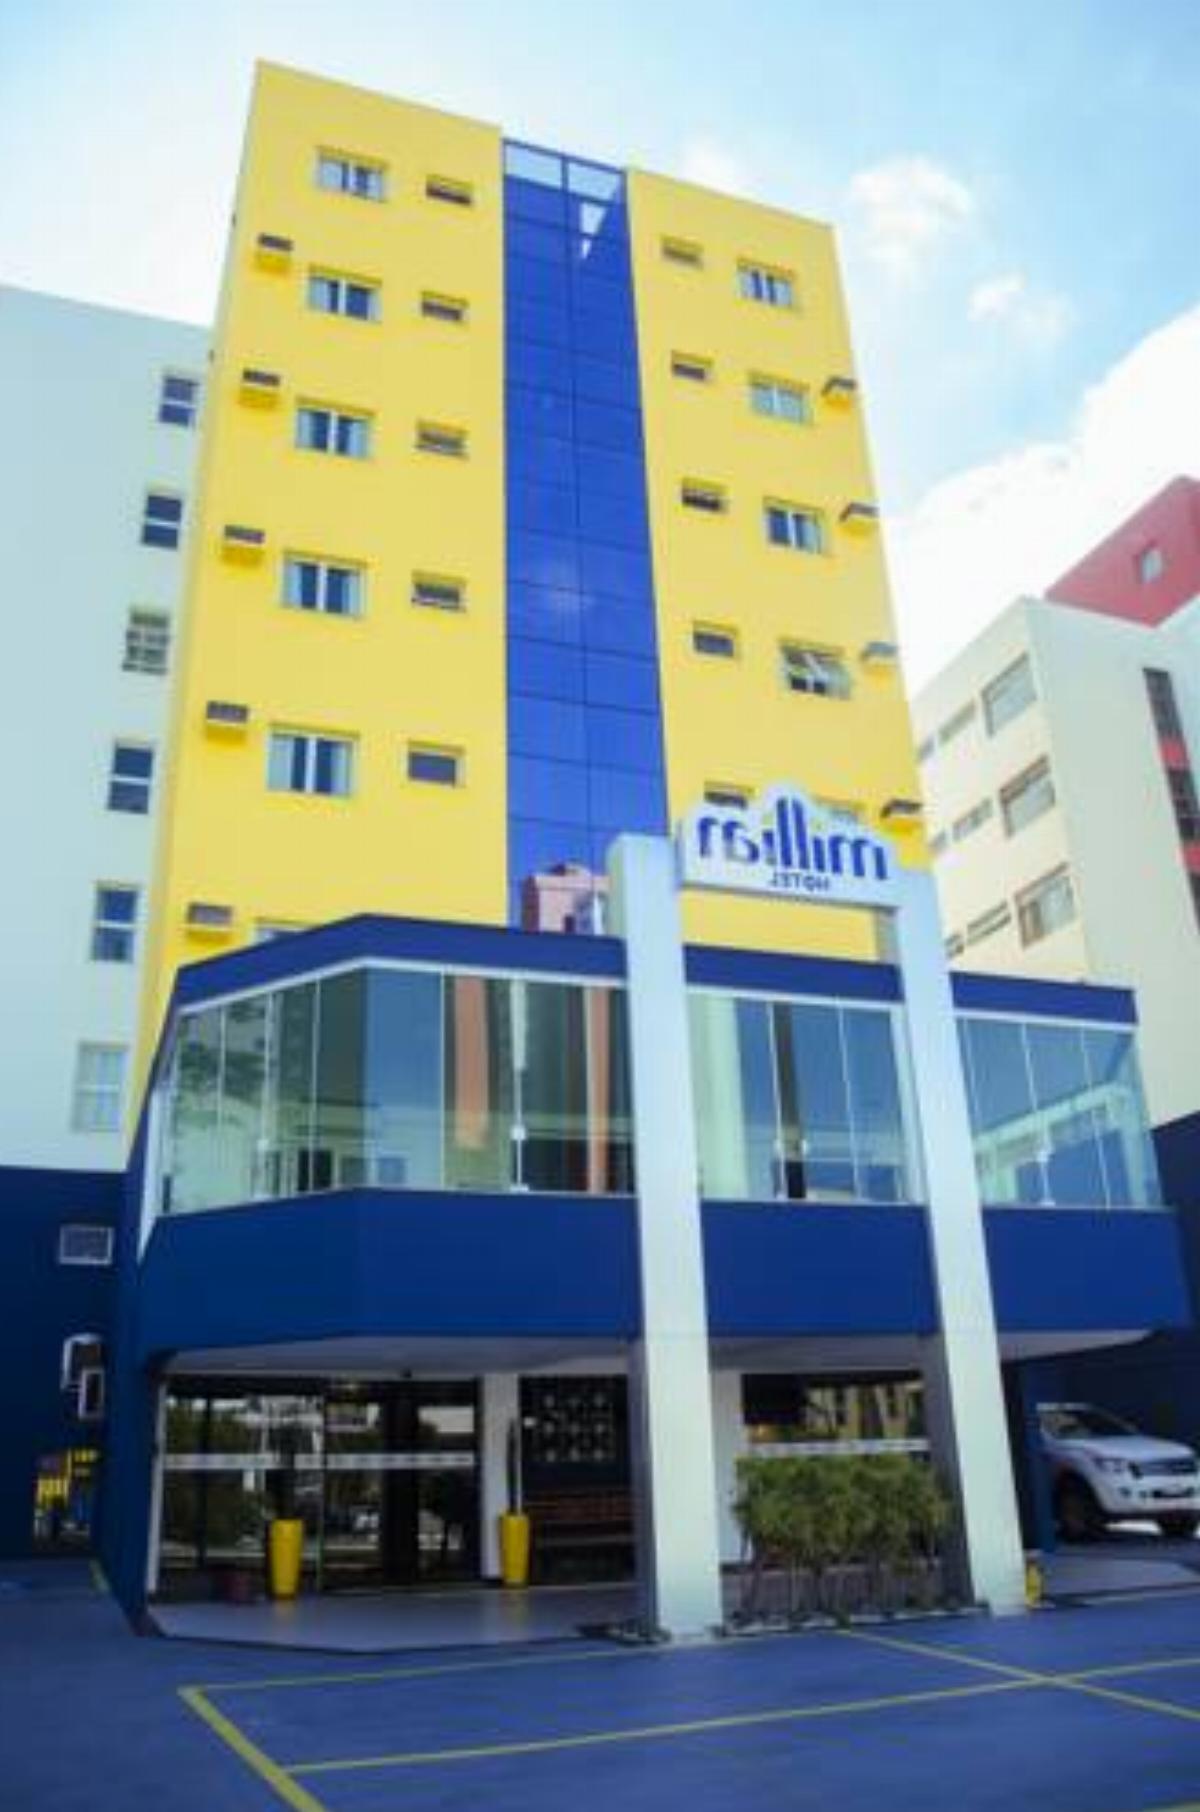 Millian Hotel Hotel Jundiaí Brazil